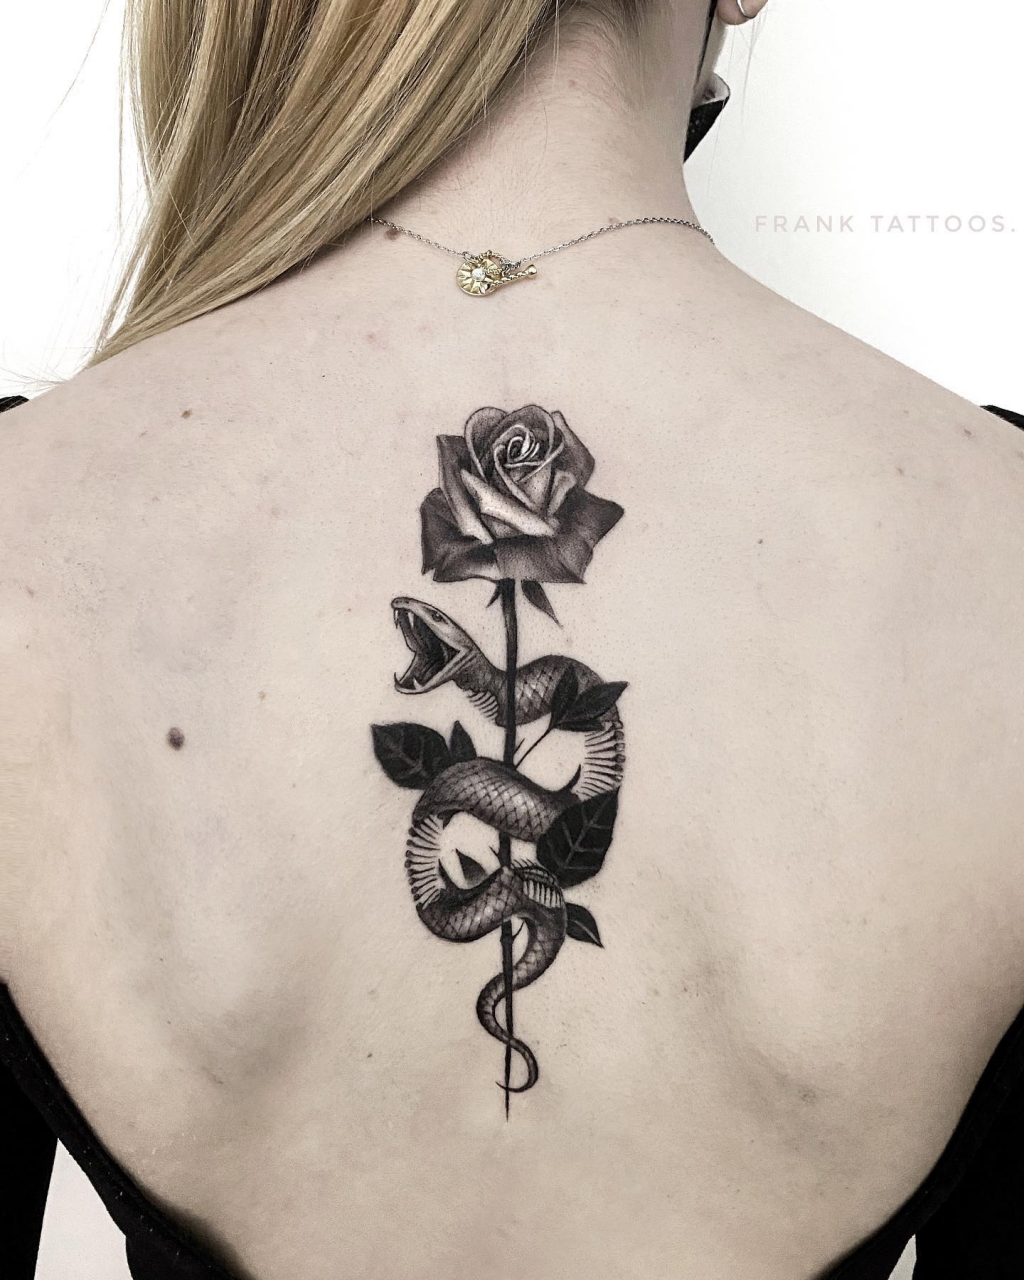 Tattoo uploaded by Gillian  Snake and rose upper backnape of neck   Tattoodo